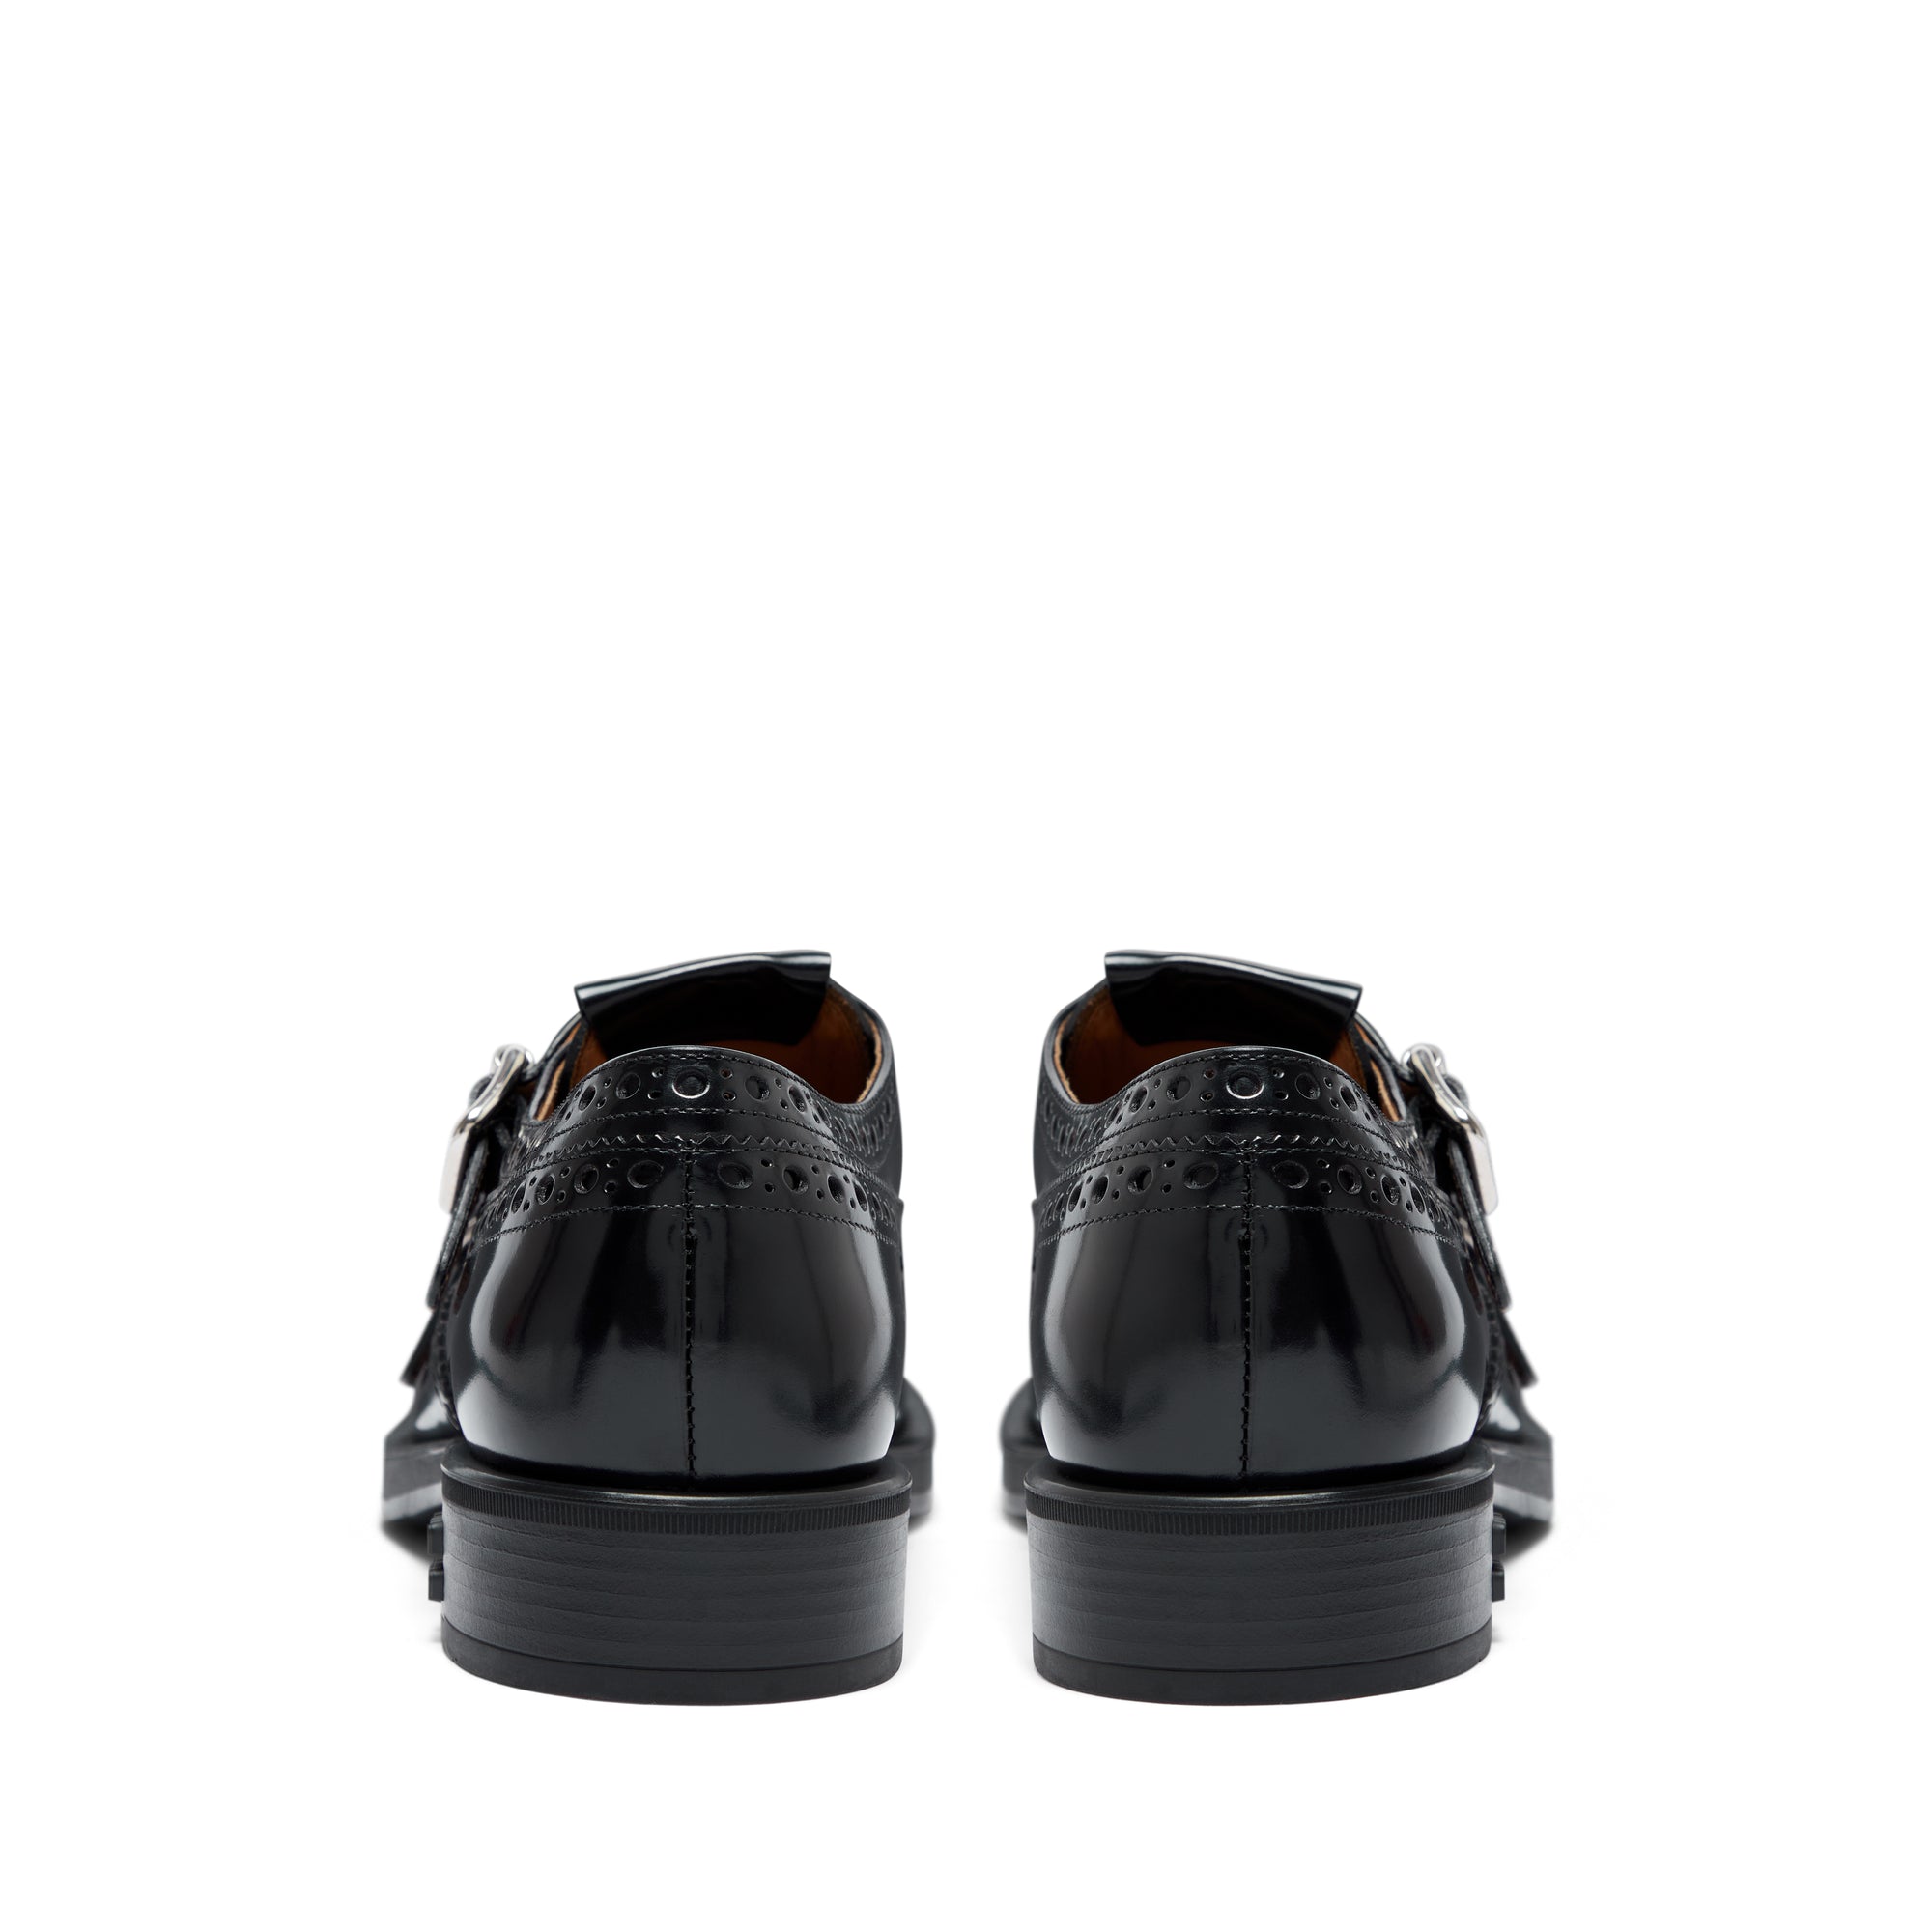 Miu Miu - Church’s Women’s Brushed Leather Double Monk Brogue Shoes - (Black) view 4